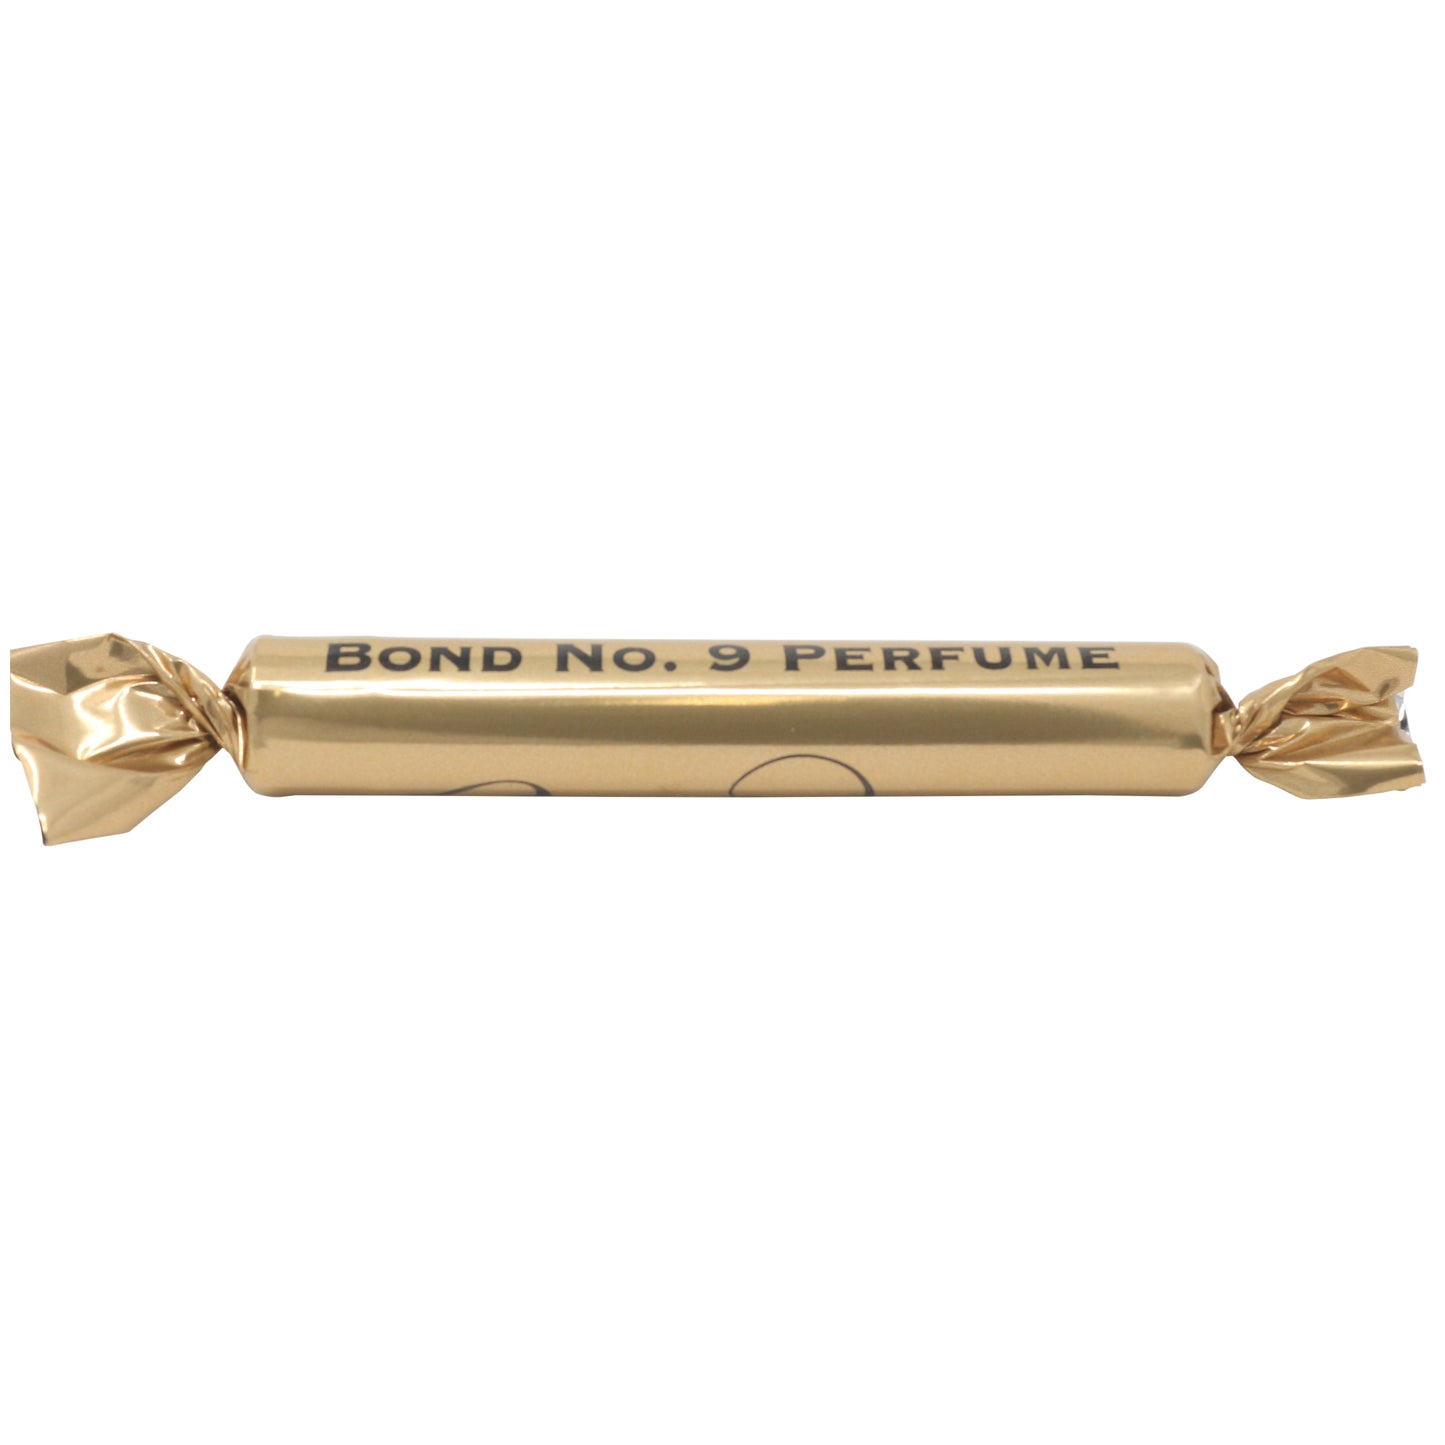 Bond No. 9 Bond No. 9 Perfumy 1.7 ml 0.054 Fl. Oz. Oficjalna próbka perfum